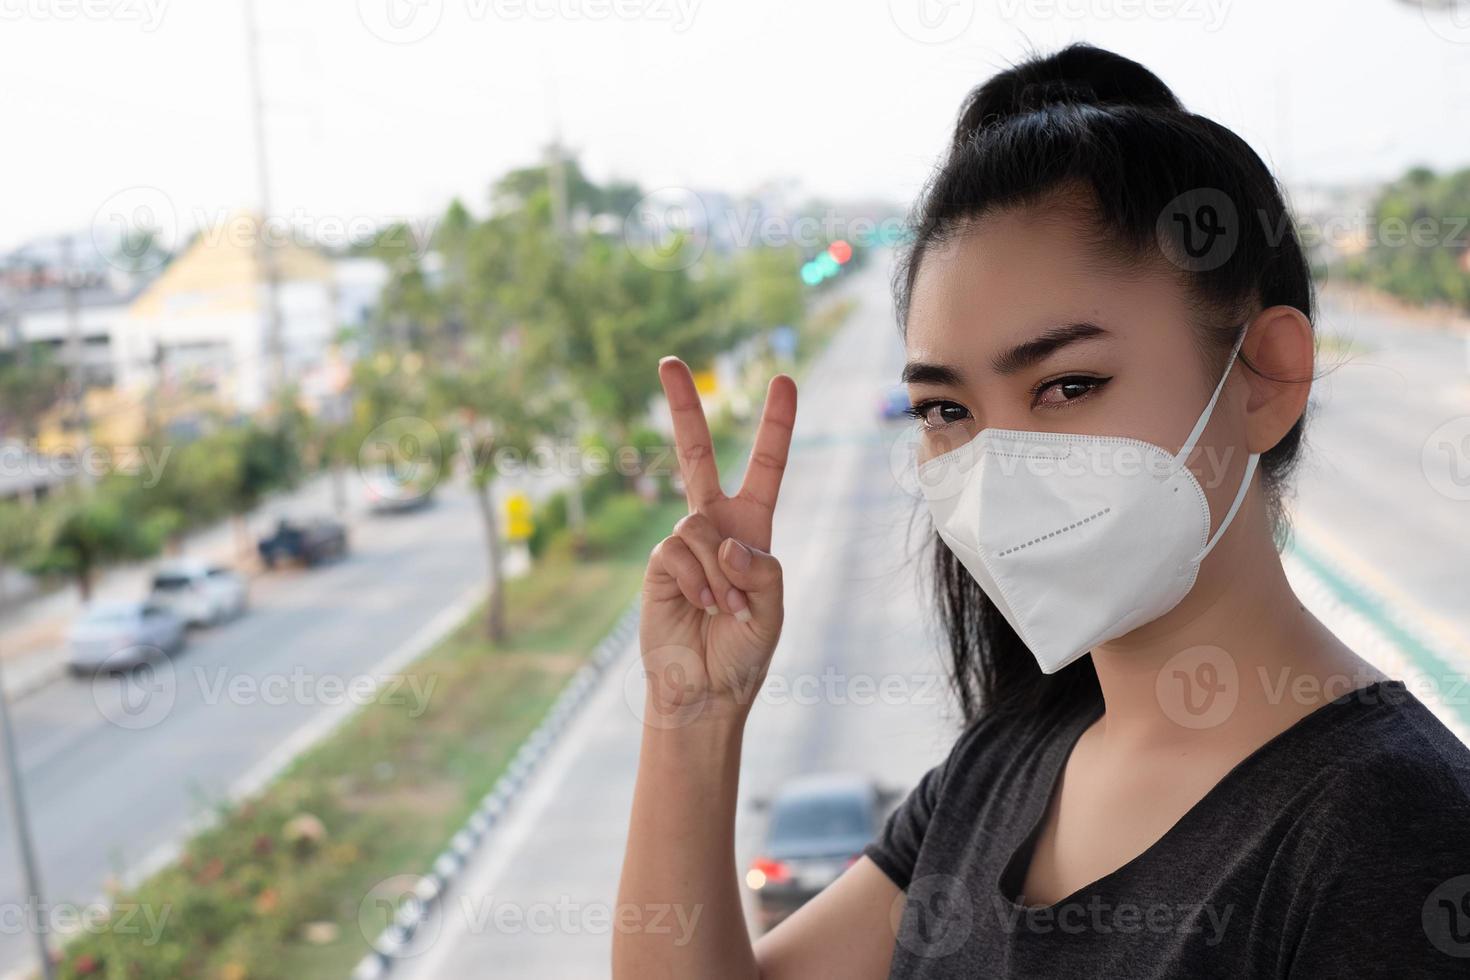 kvinna stående hand tecken på 2 fingrar med att sätta på respirator n95 mask för att skydda mot luftburna luftvägssjukdomar som influensa covid-19 coronavirus pm2.5 damm och smog på vägen burred backgro foto